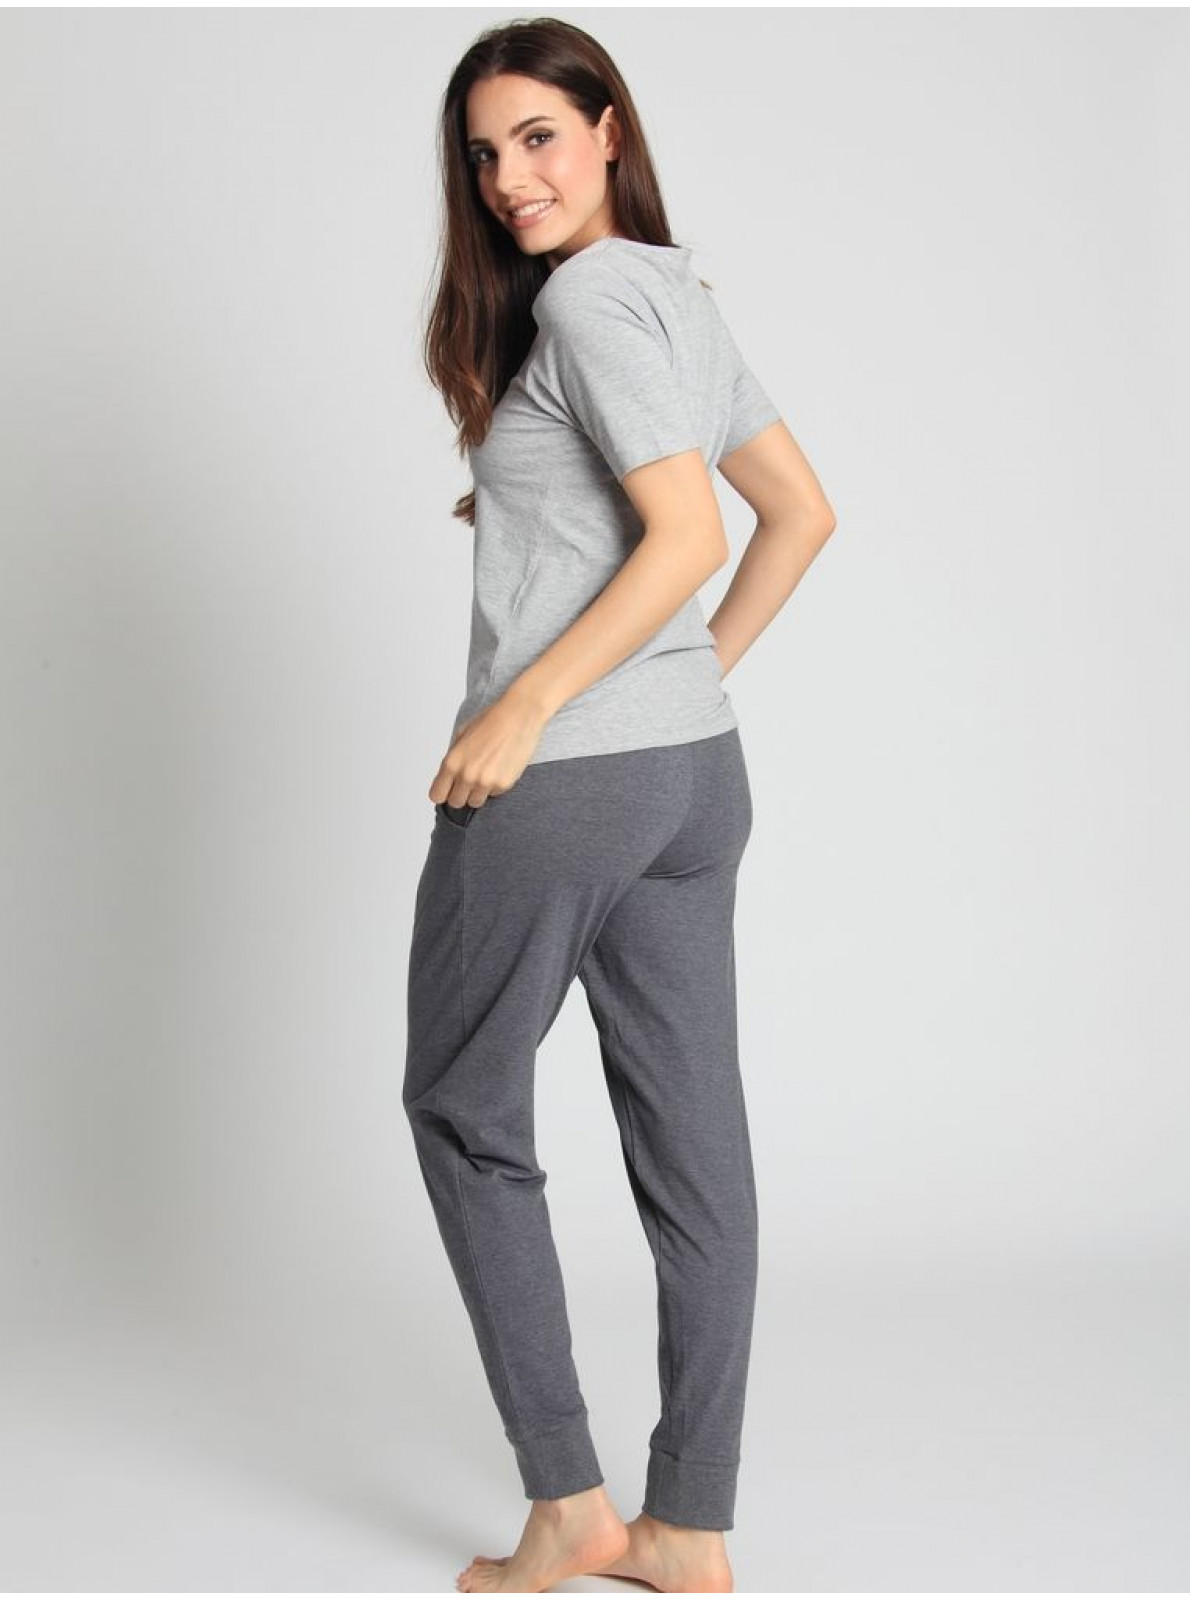 Dámske pyžamo Sassa 59152 a 59154 s krátkym rukávom a praktickými vreckami. Vyrobené z pohodlného bavlneného úpletu, ideálne aj ako voľnočasové oblečenie.